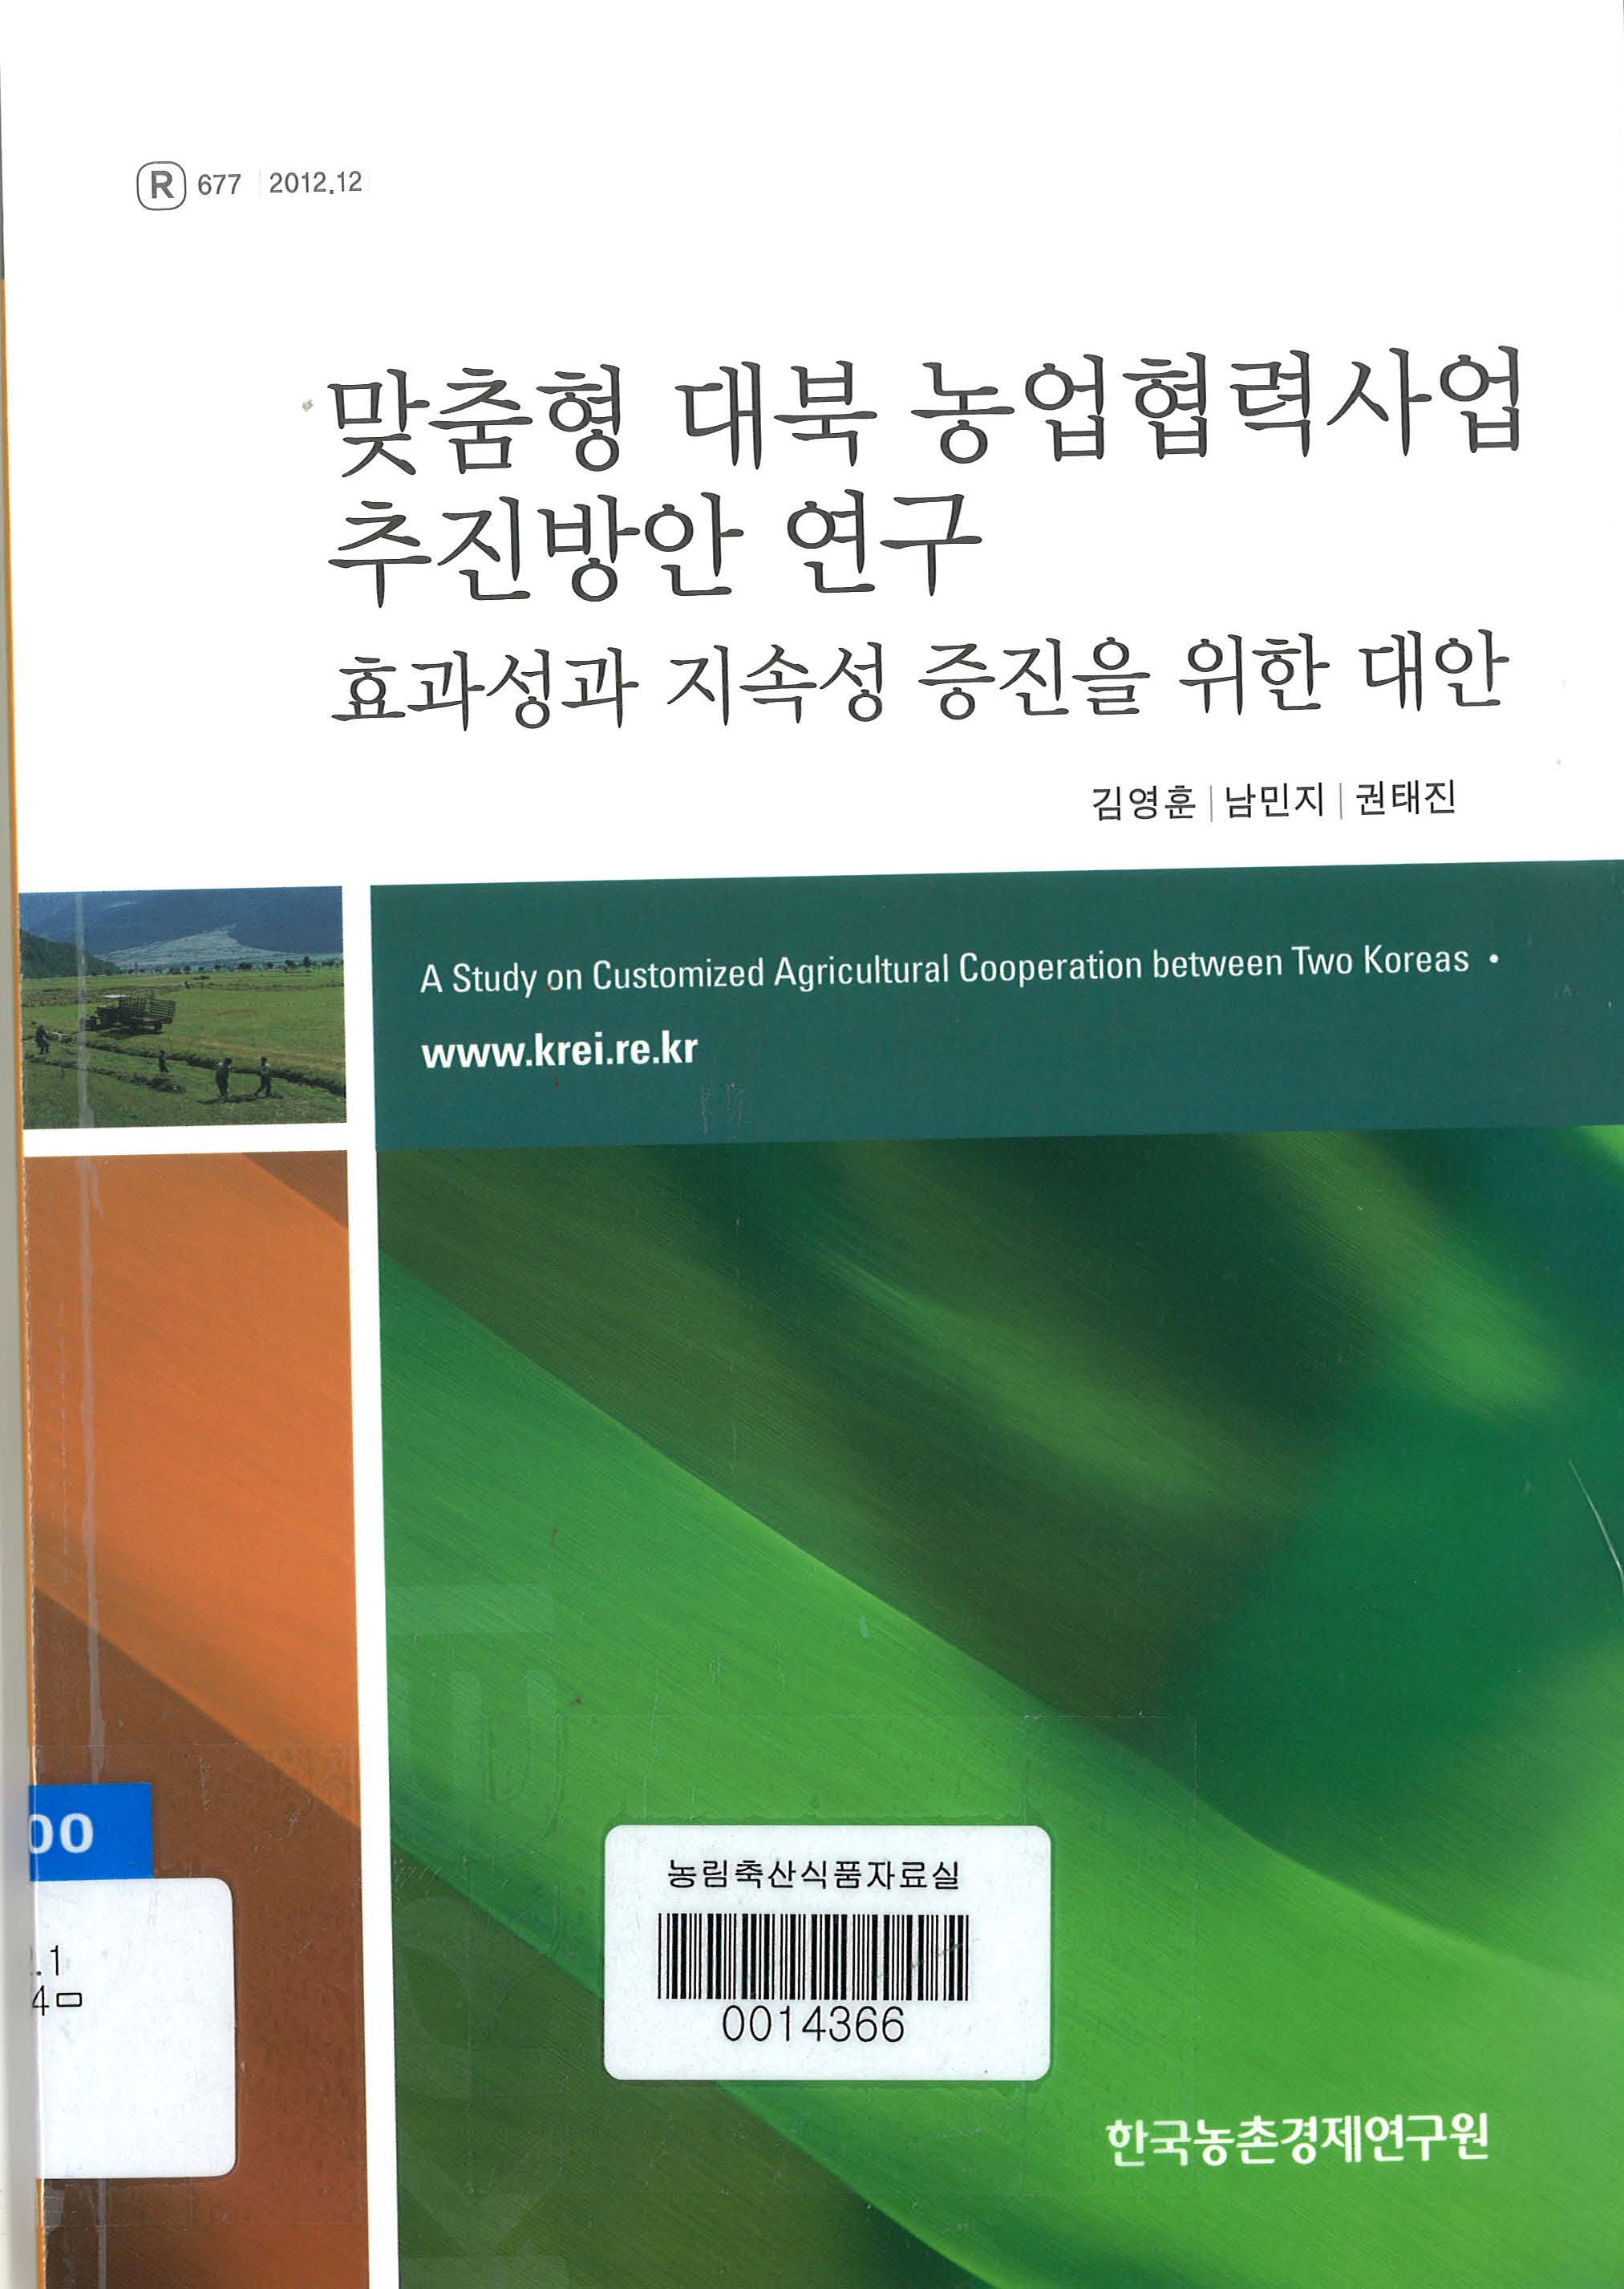 맞춤형 대북 농업협력사업 추진방안 연구 : 효과성과 지속성 증진을 위한 대안